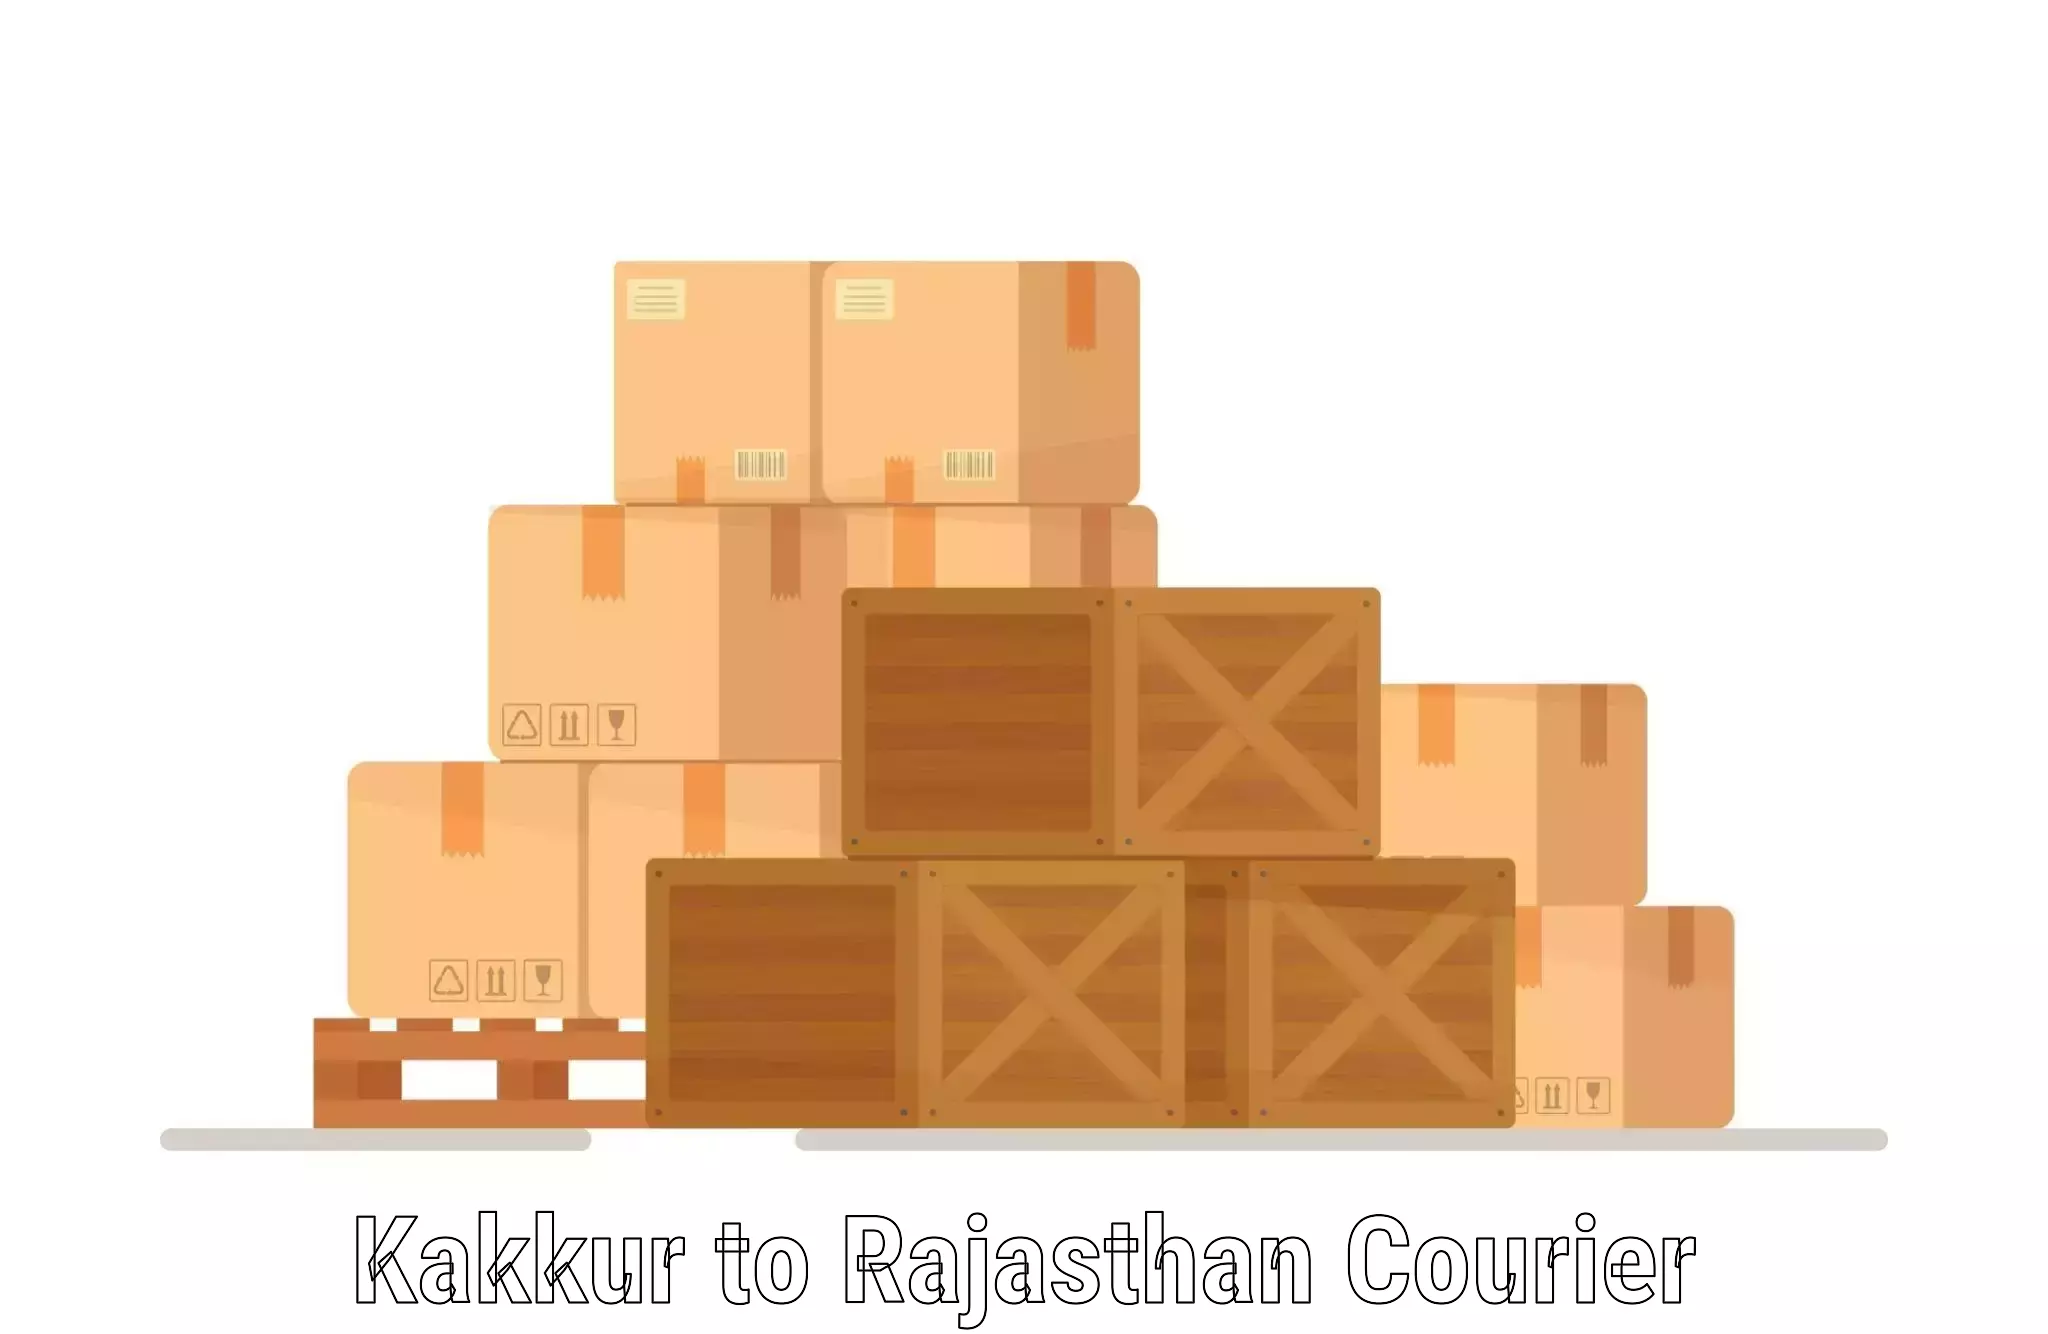 On-time shipping guarantee Kakkur to Tijara